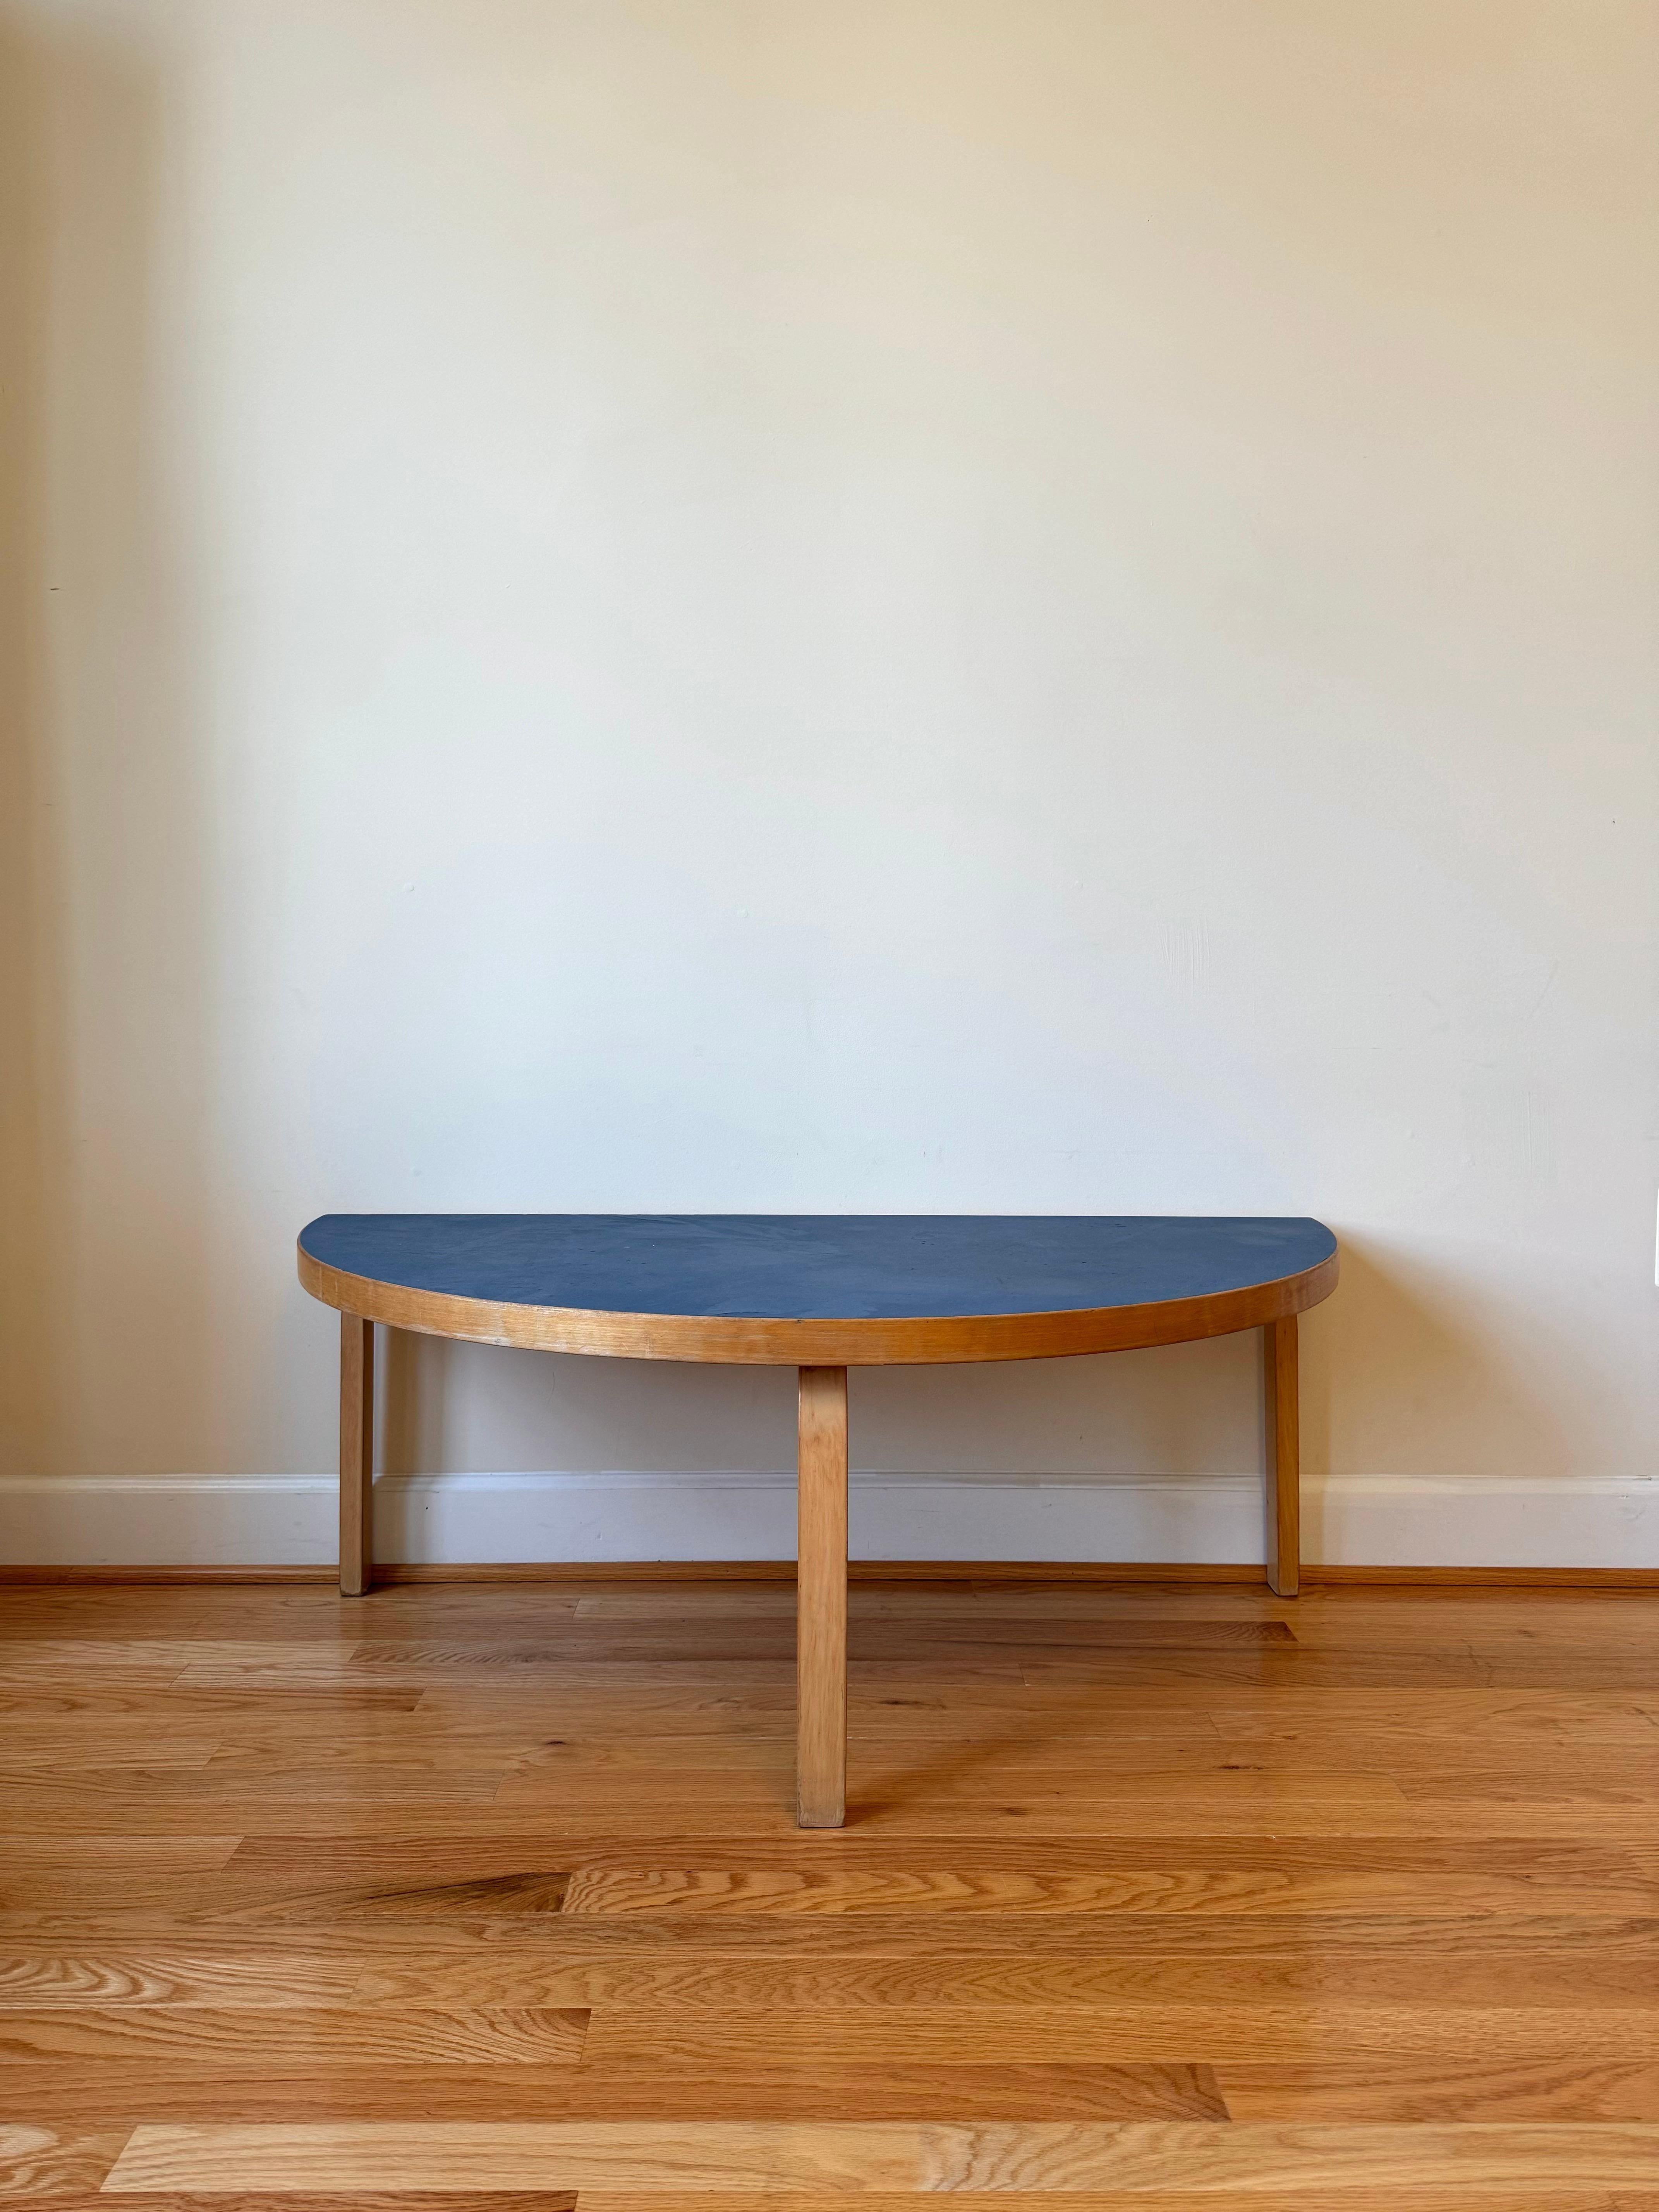 La table Aalto, conçue par Alvar Aalto en 1933, dégage une familiarité décontractée qui résiste à toute catégorisation. Avec ses pieds et ses chants en bouleau finlandais, il rayonne de beauté et de chaleur naturelles, se déplaçant facilement entre